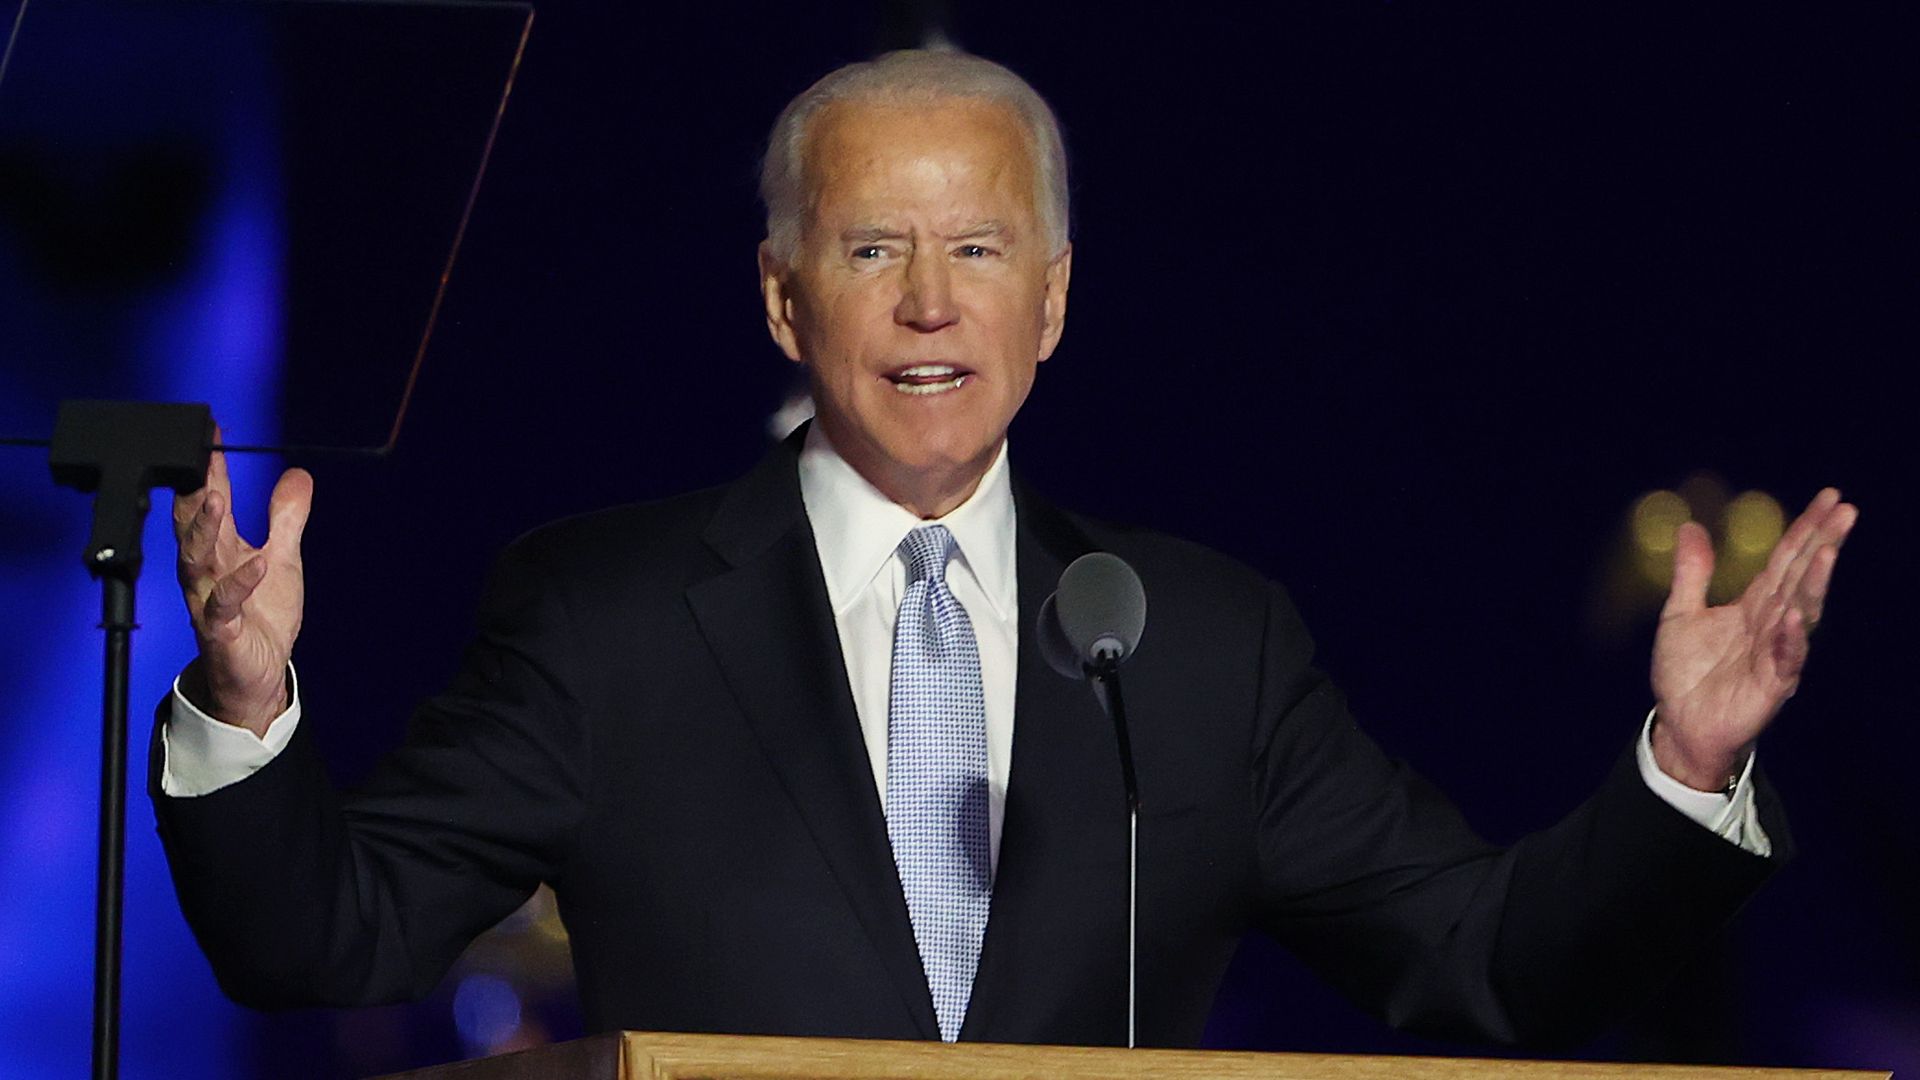 Joe Biden delivers his victory speech